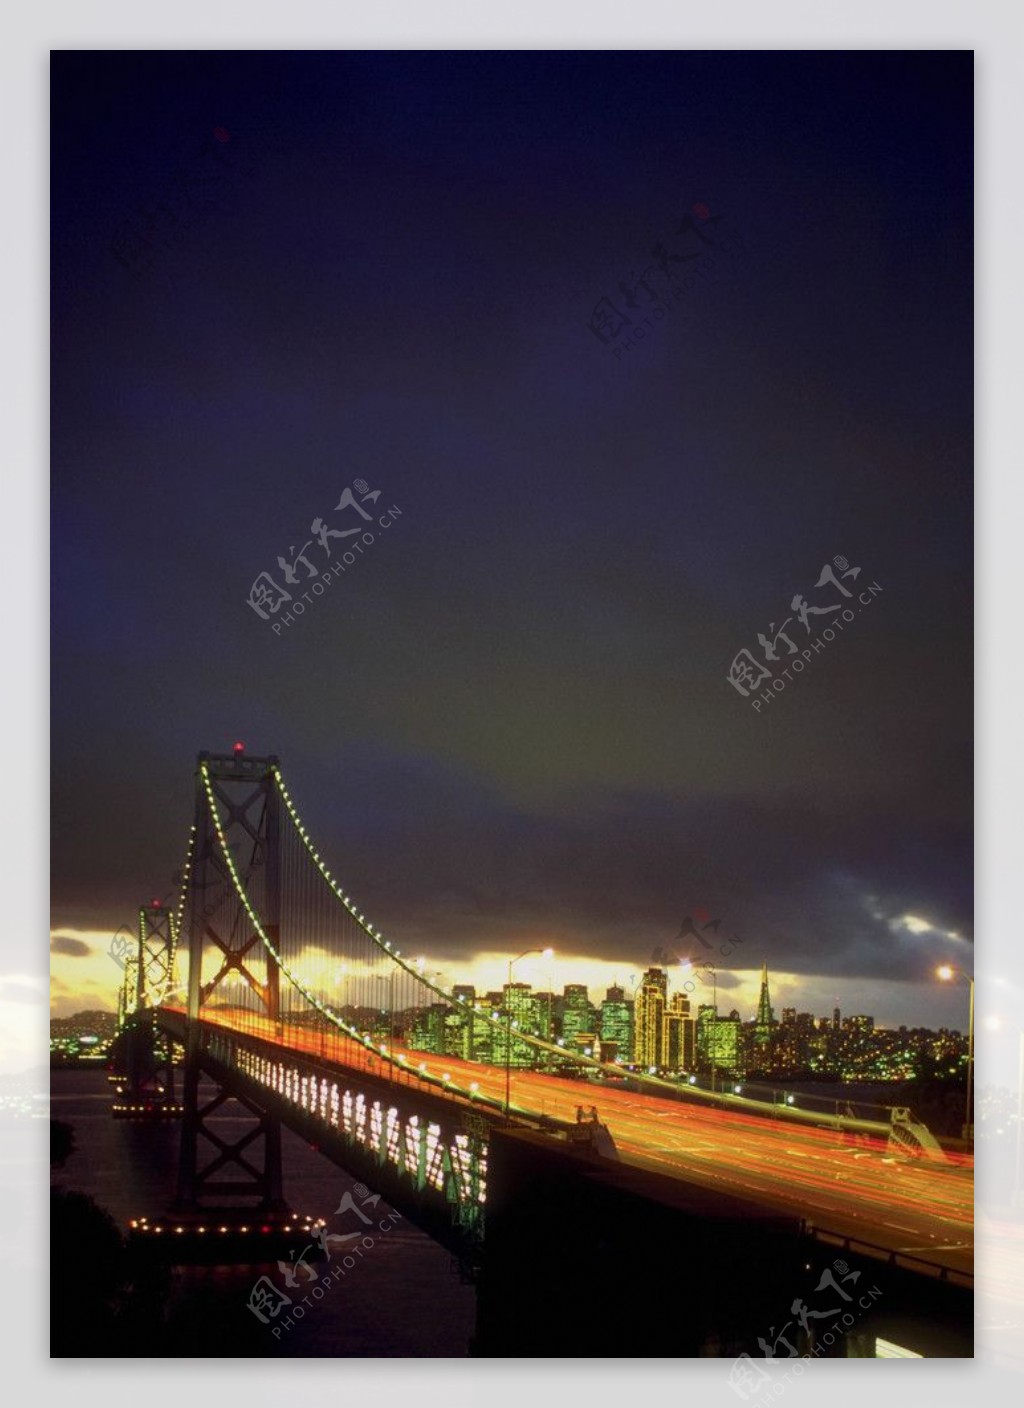 大桥夜景照明灯饰风光图片